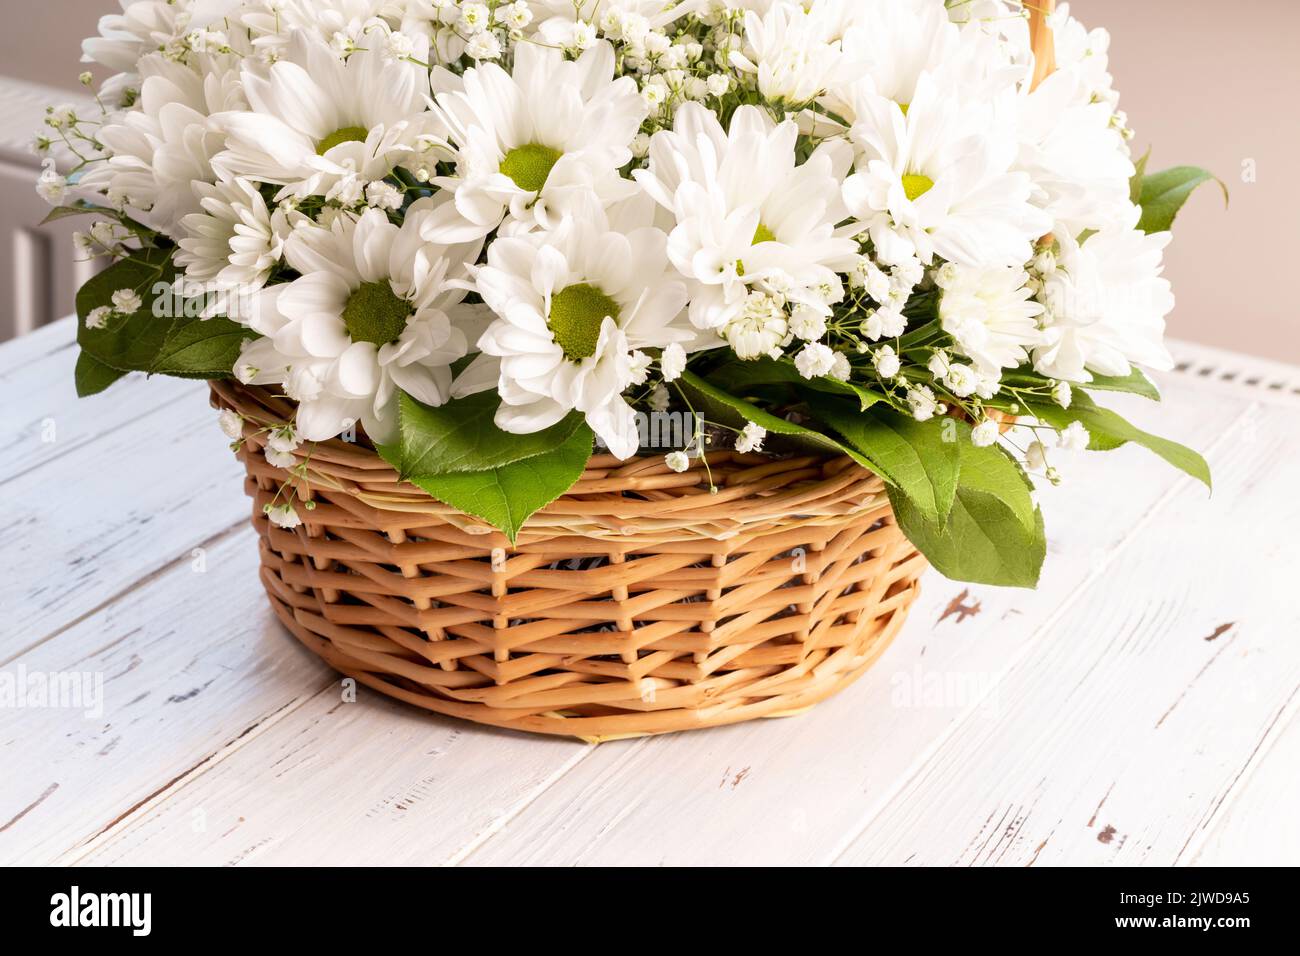 Panier en osier de chrysanthèmes blancs camomille sur fond de bois. Panier de fleurs pour les fêtes Banque D'Images